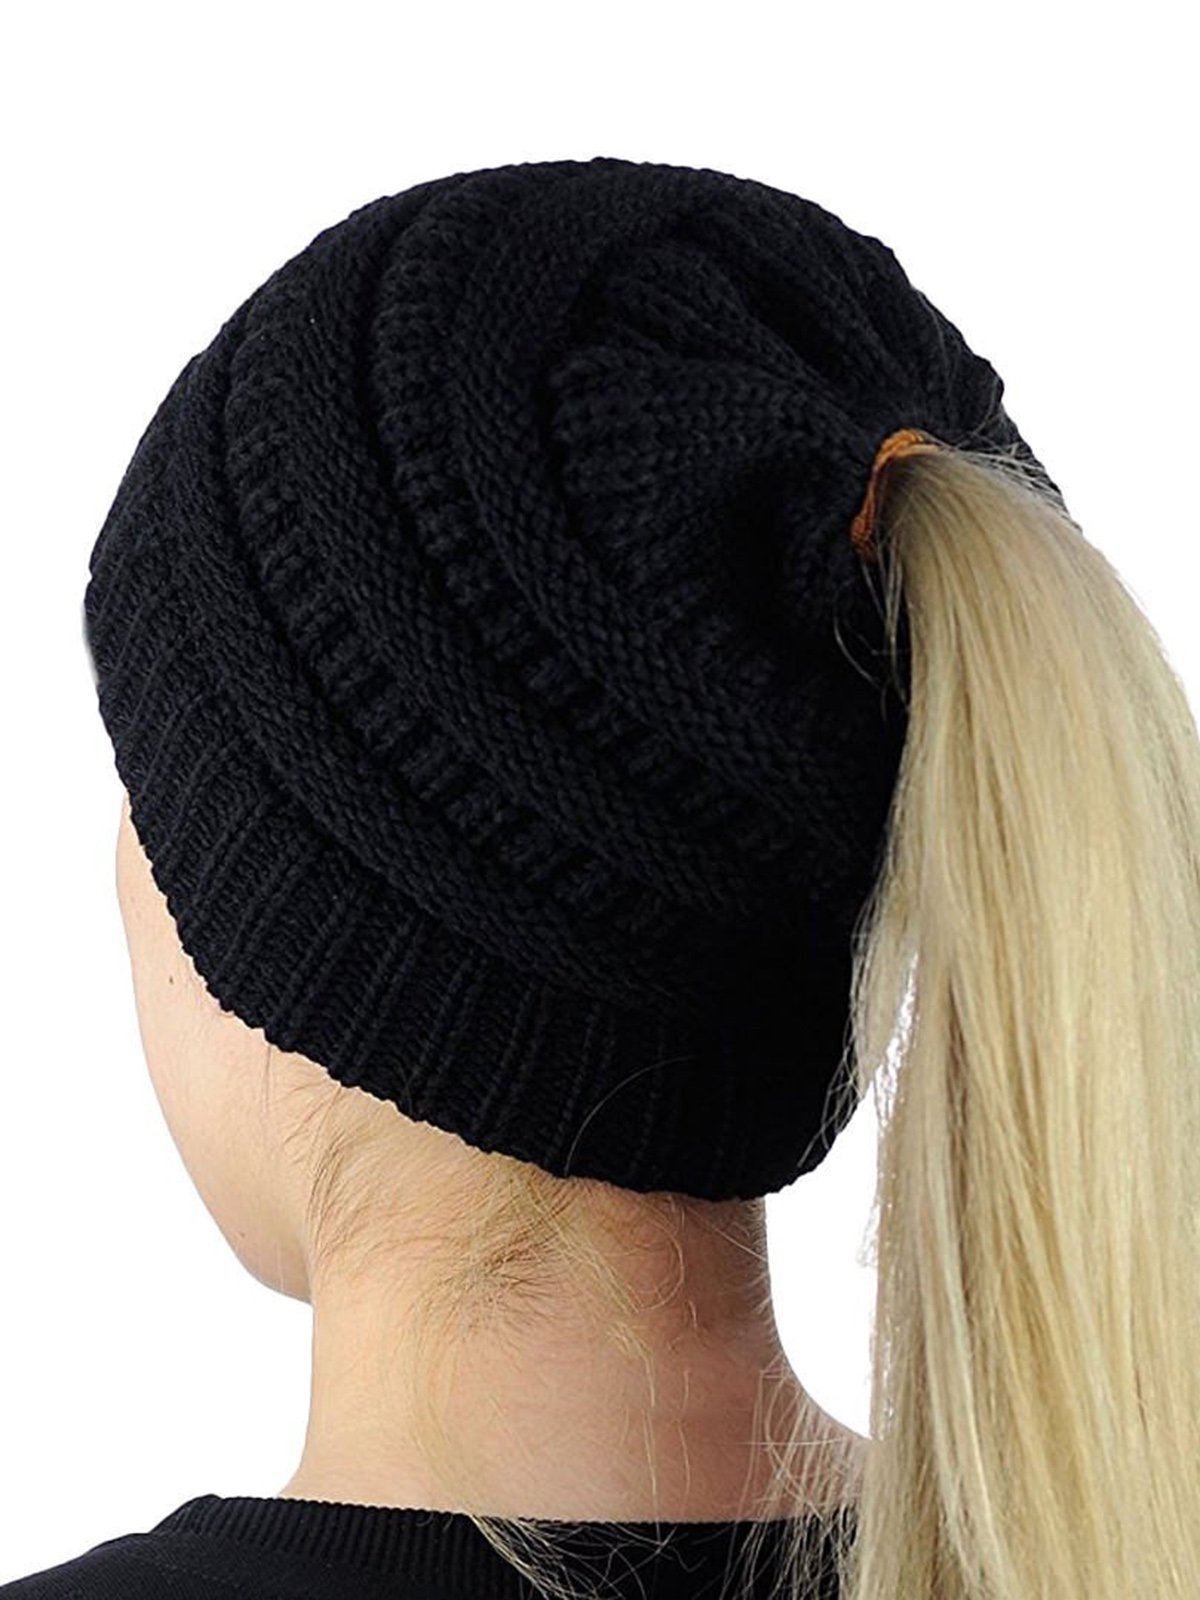 Women's Knitting Wool Earpiece Cap Hat